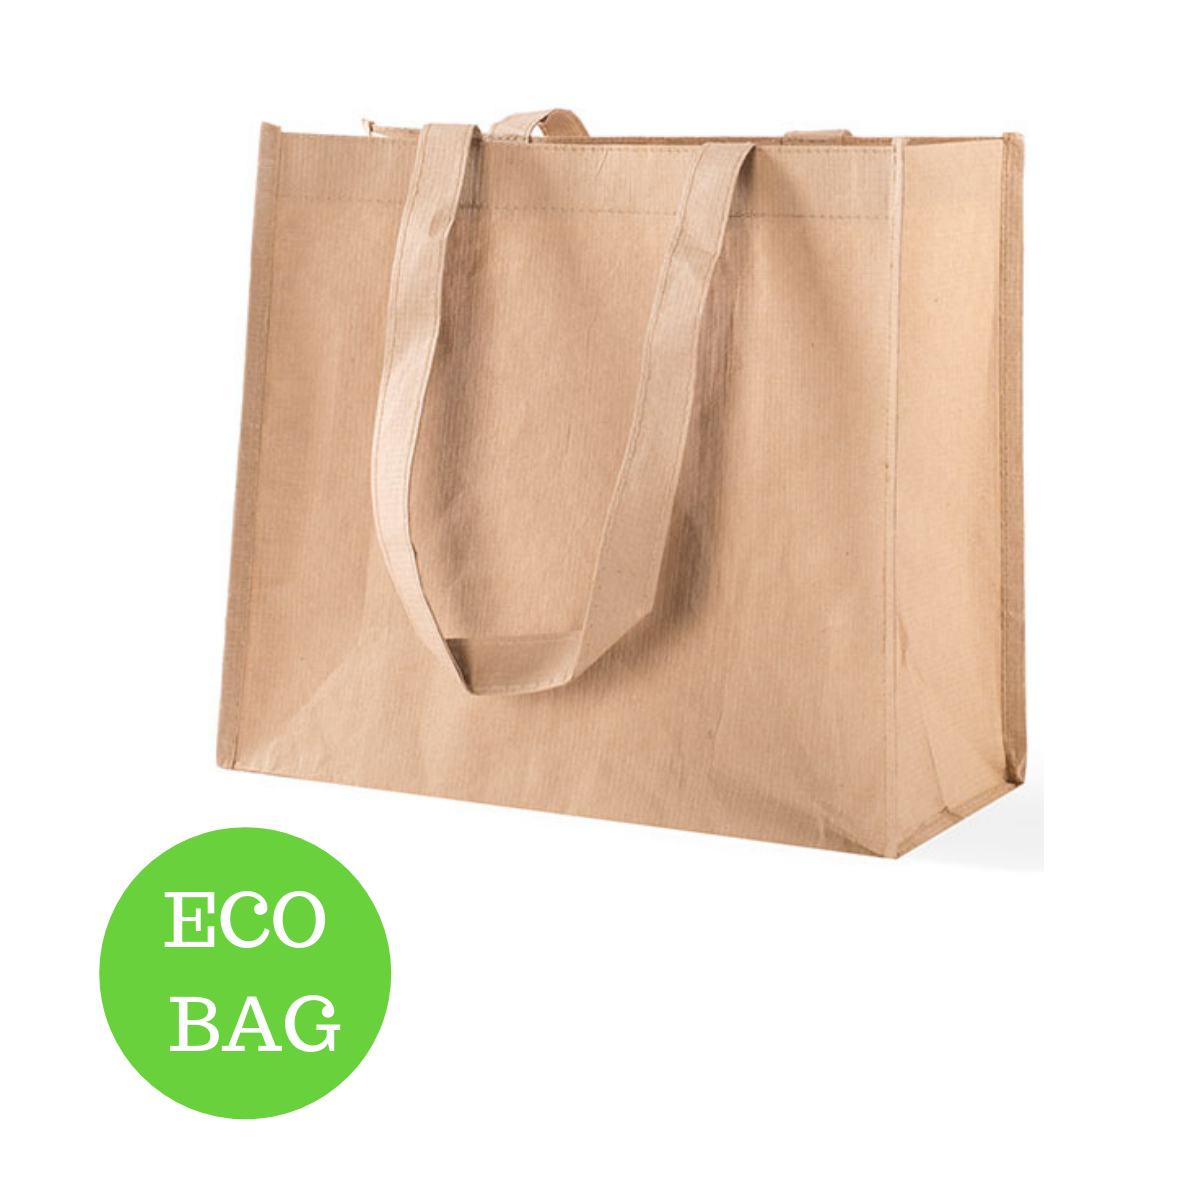 eco-bag